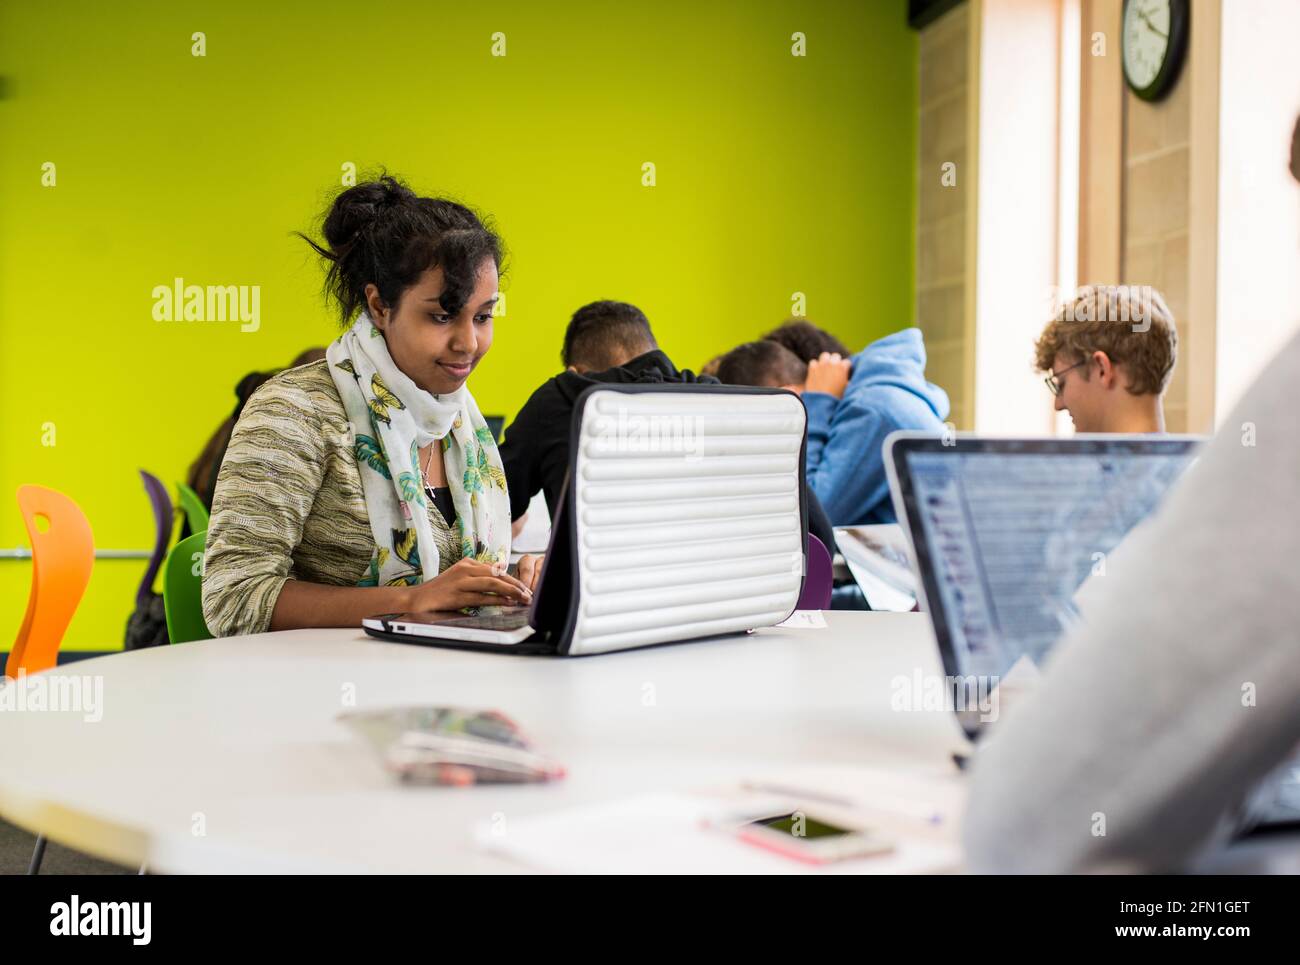 Weibliche schwarze Studentin der sechsten Schulstufe, junge Frau im britischen Bildungswesen, Teenager-Mädchen, die einen Laptop betrachtet, indische Studentin, die am Laptop arbeitet, Studentin Stockfoto